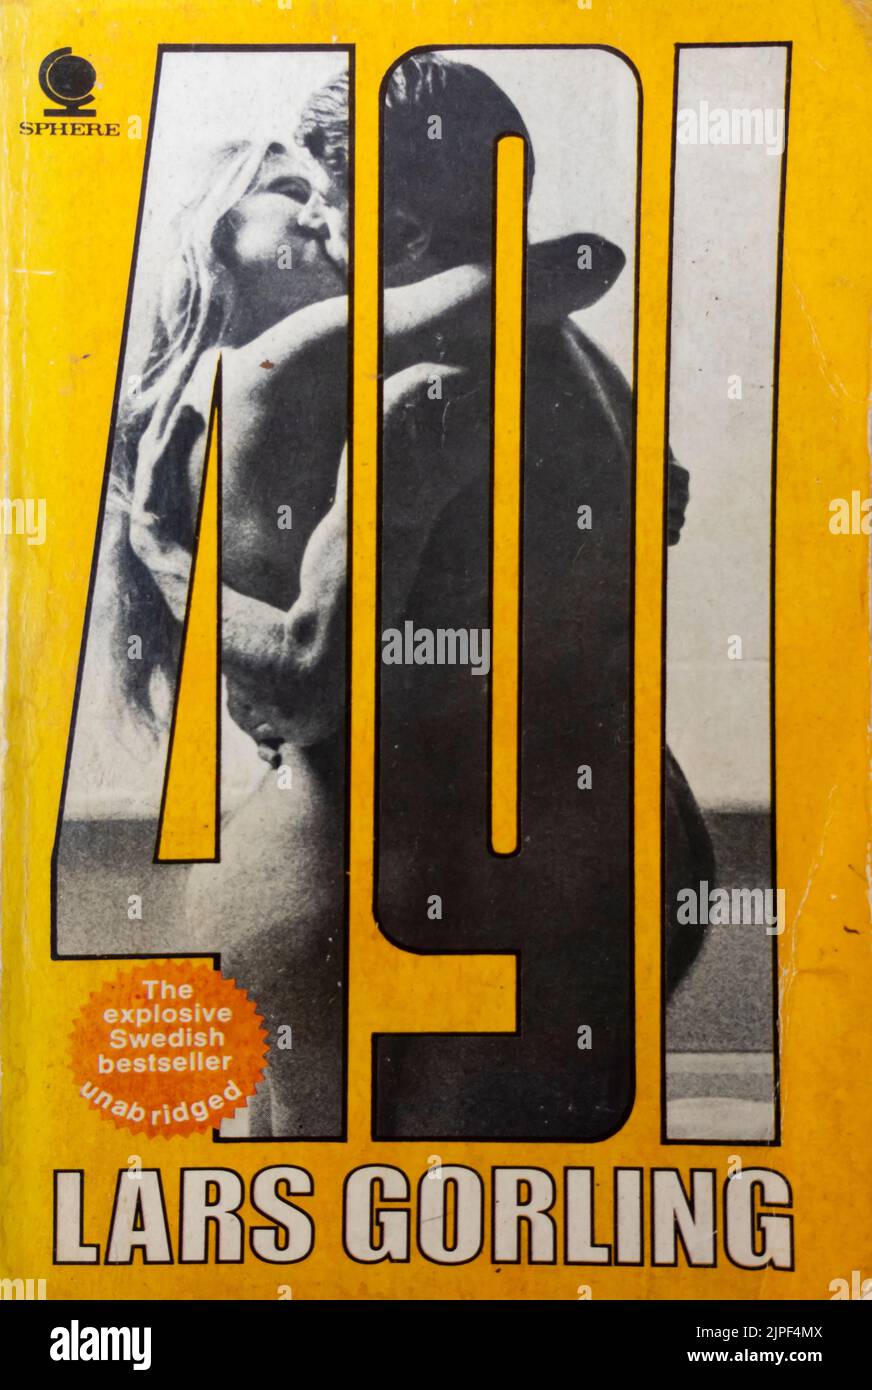 491 - Libro de Lars Görling - 1962 - Edición en Inglés Foto de stock